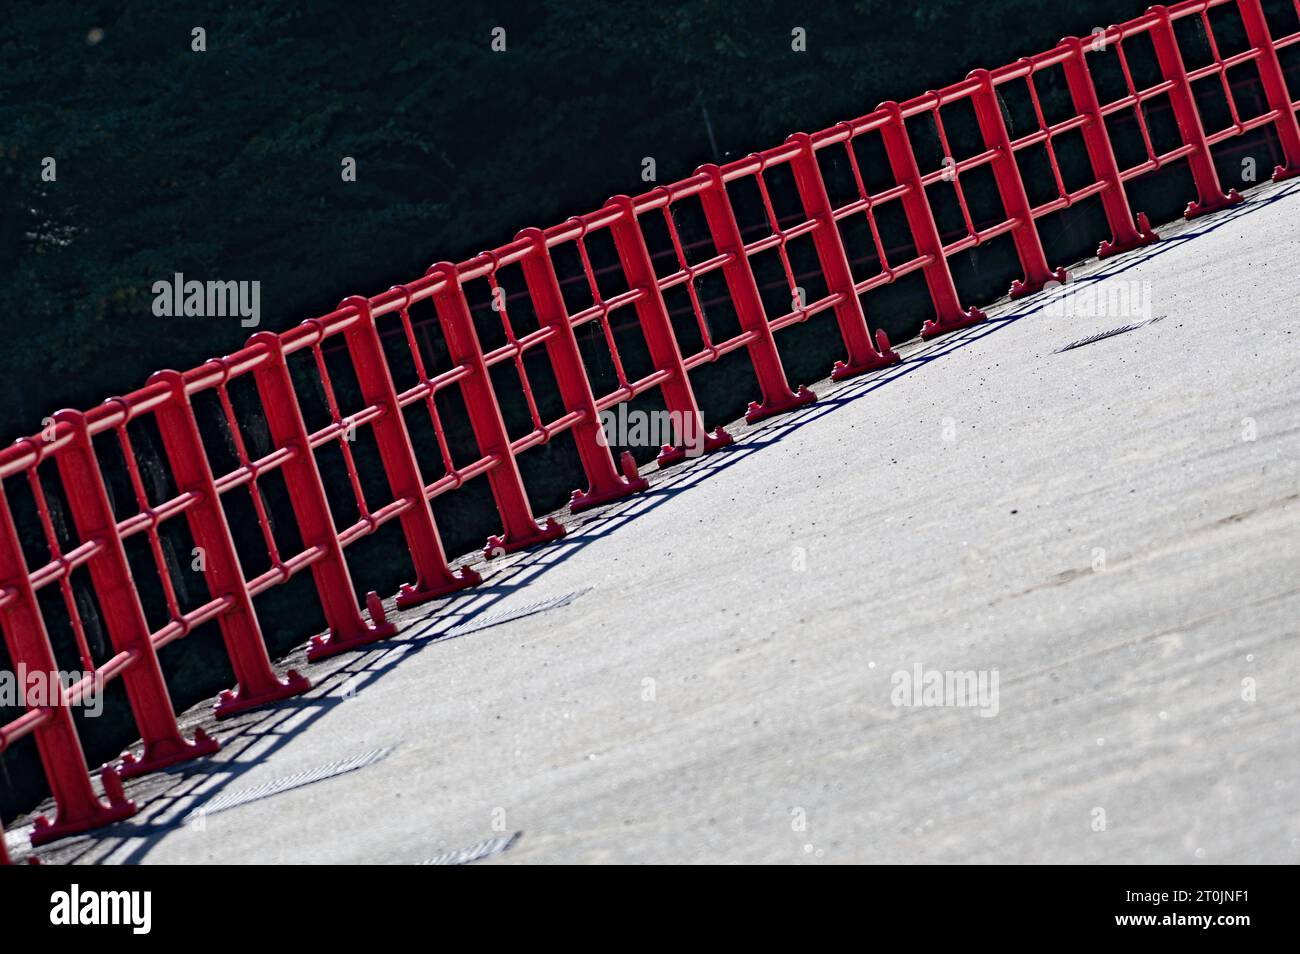 Abstrakte Fotografie des roten Sicherheitszauns an der Staumauer. Wasserreservoir Bystricka, Tschechische republik. Stockfoto